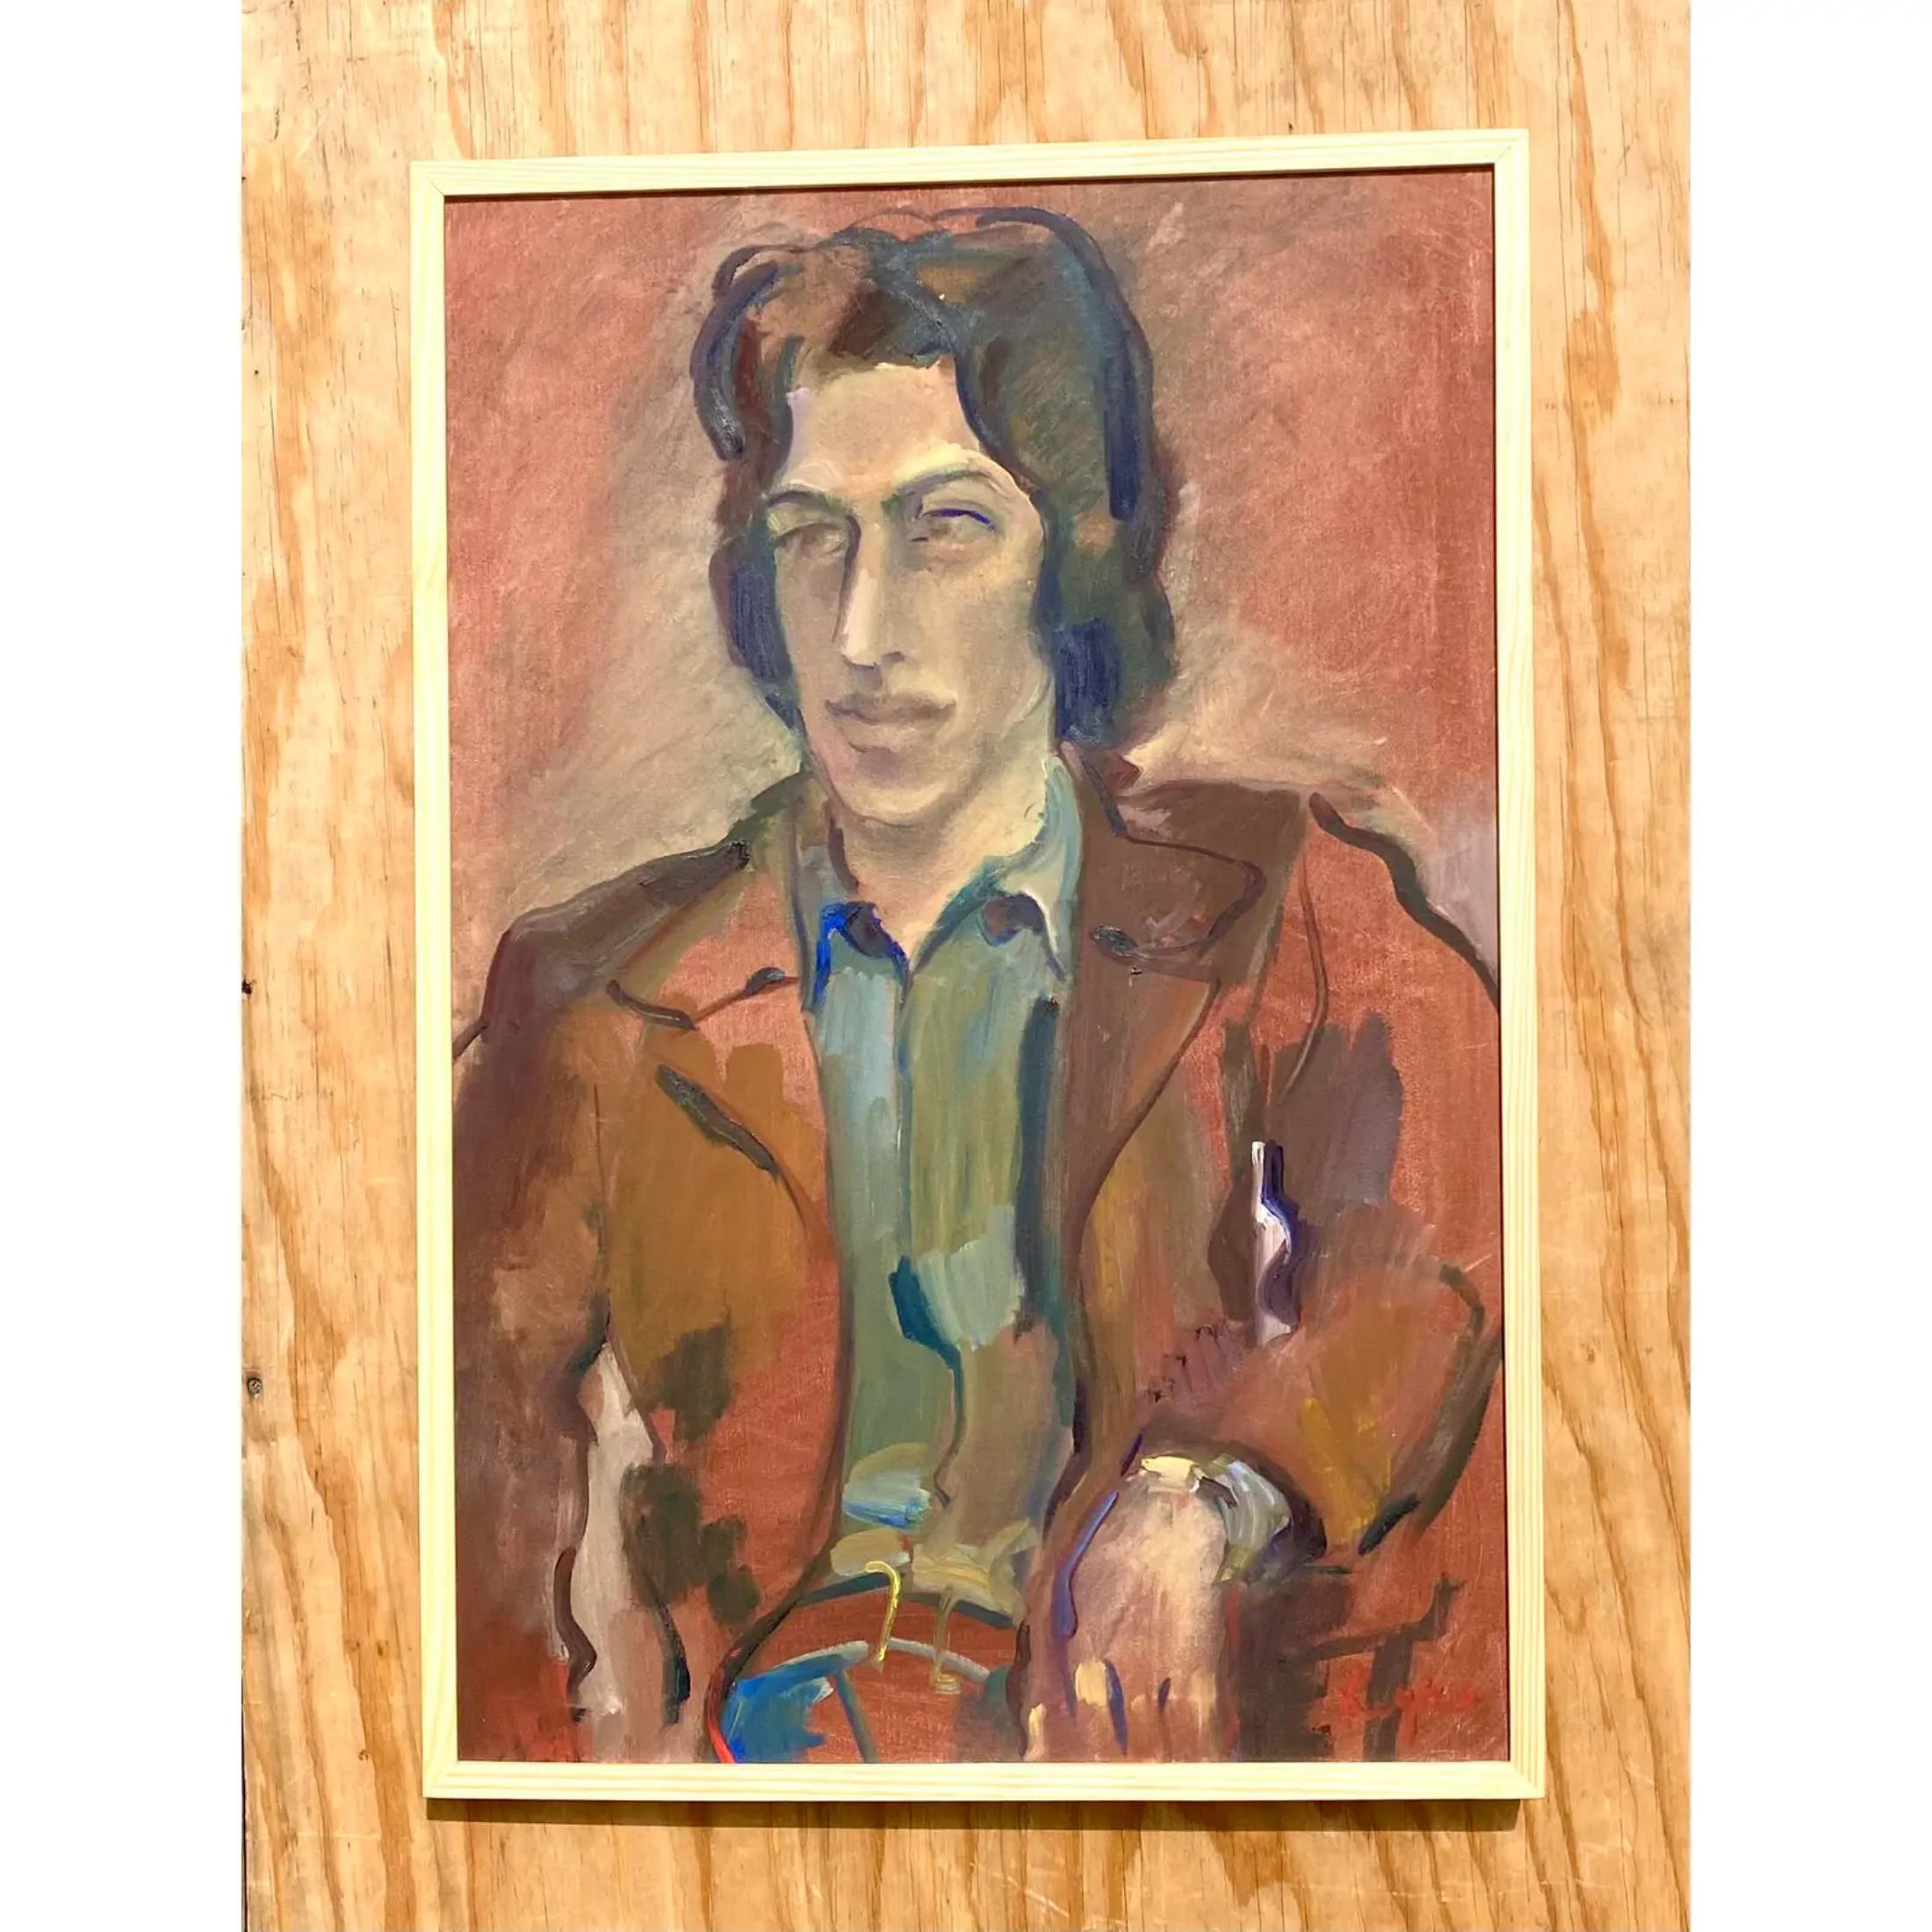 Fabulous vintage Boho original Ölgemälde. Eine malerische Komposition eines stilvollen jungen Mannes. Leuchtend bunte Farben dominieren diese Leinwand. Signiert von der Künstlerin Regone Pierokkis. 

